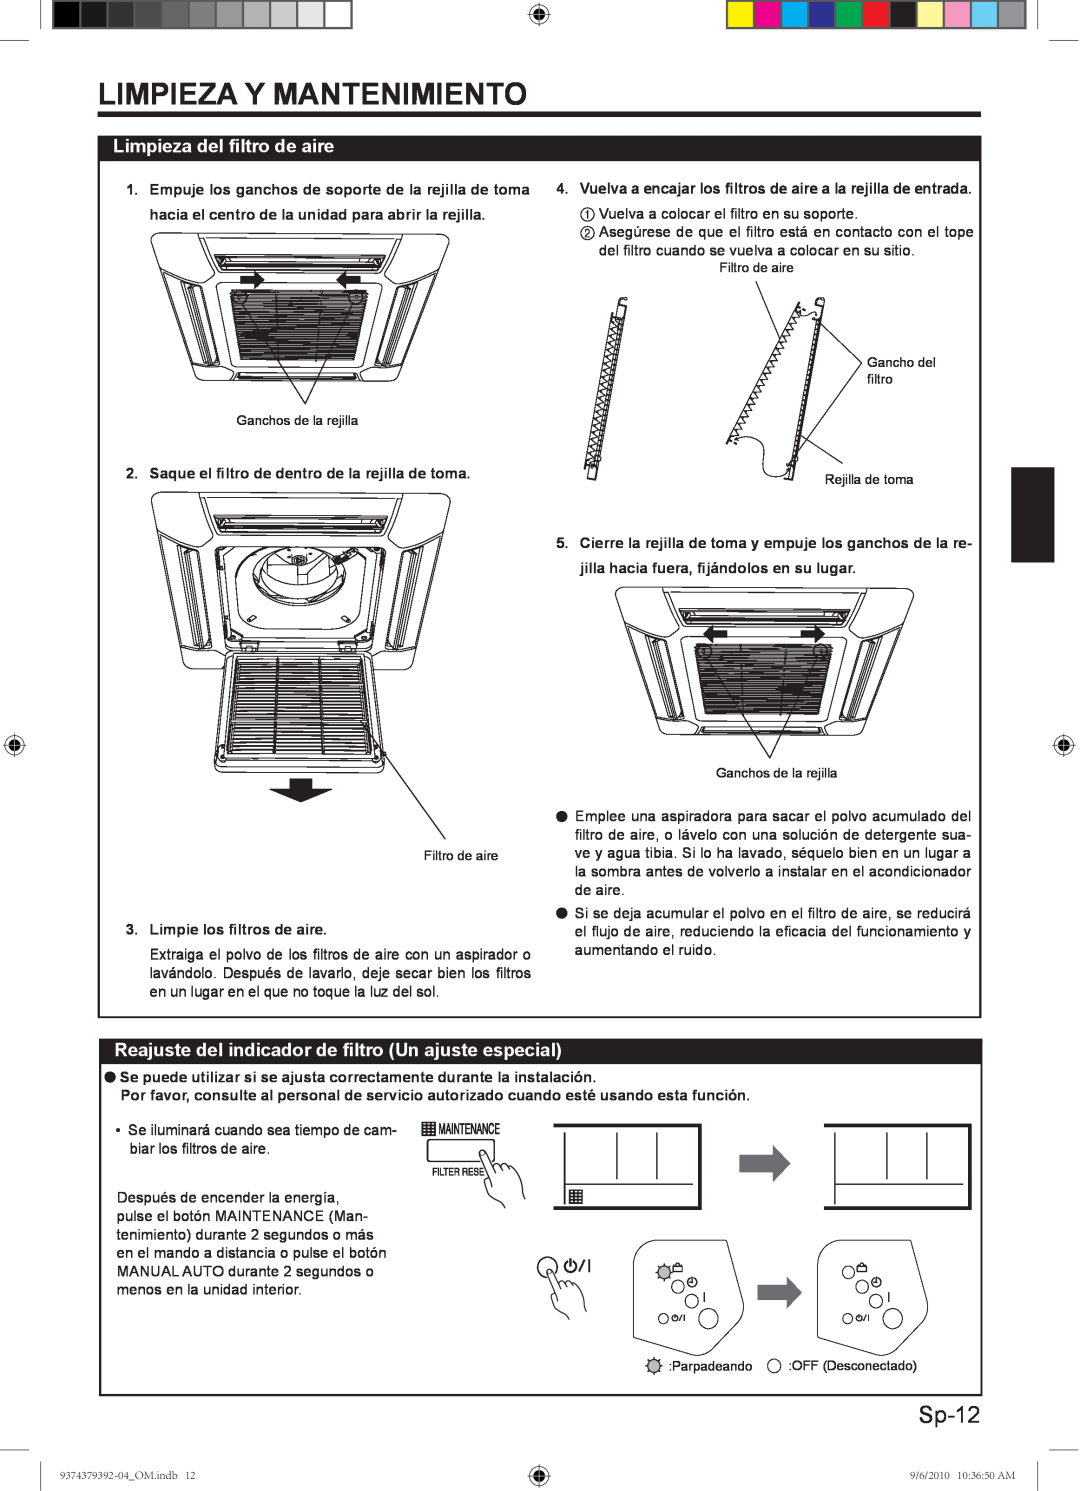 Fujitsu 9374379392-04, Halcyon Air Conditioner manual Sp-12, Limpieza Y Mantenimiento, Limpieza del ﬁltro de aire 